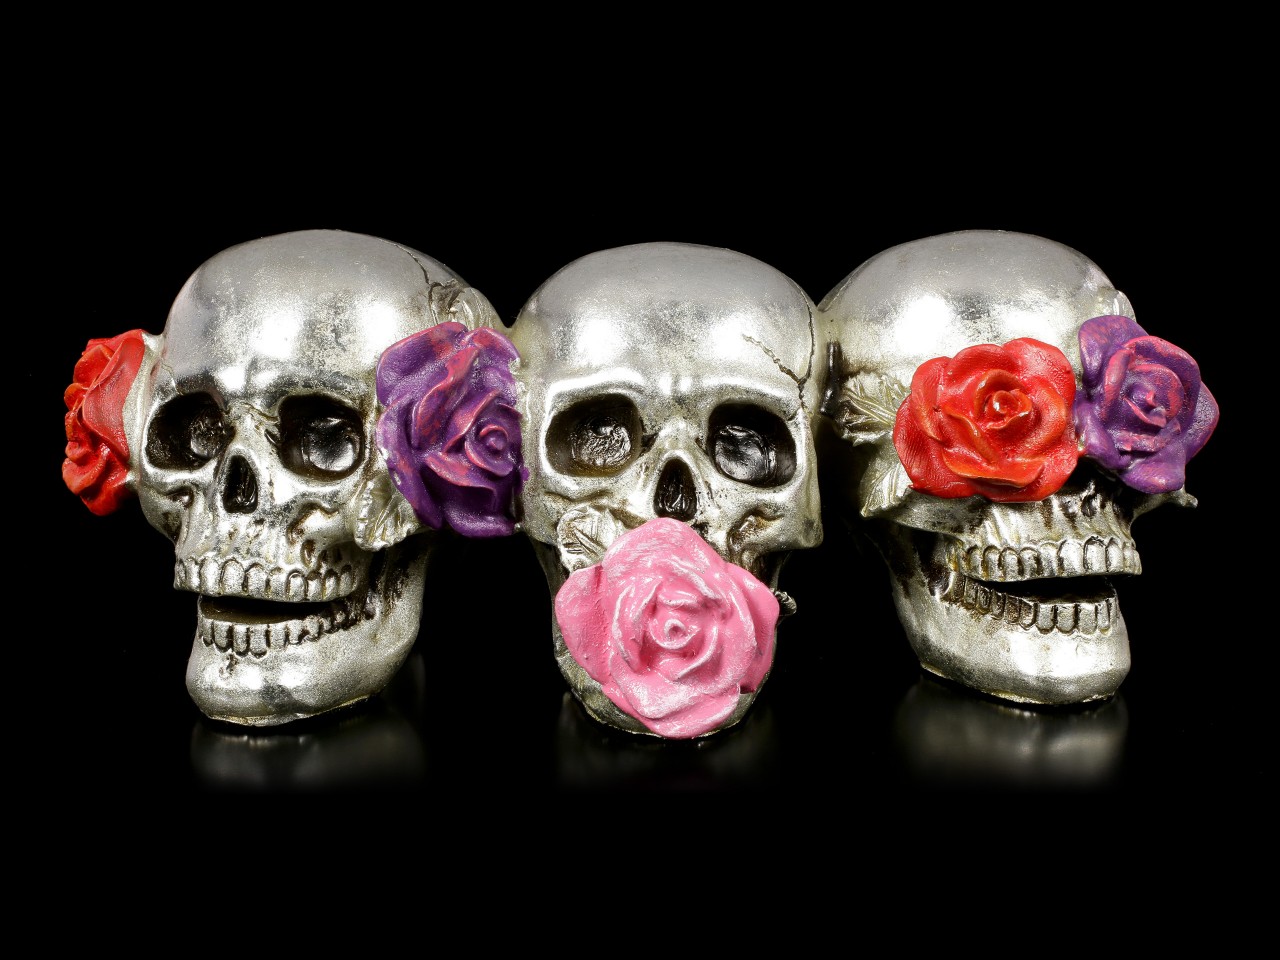 Drei Totenköpfe mit Rosen - Nichts Böses